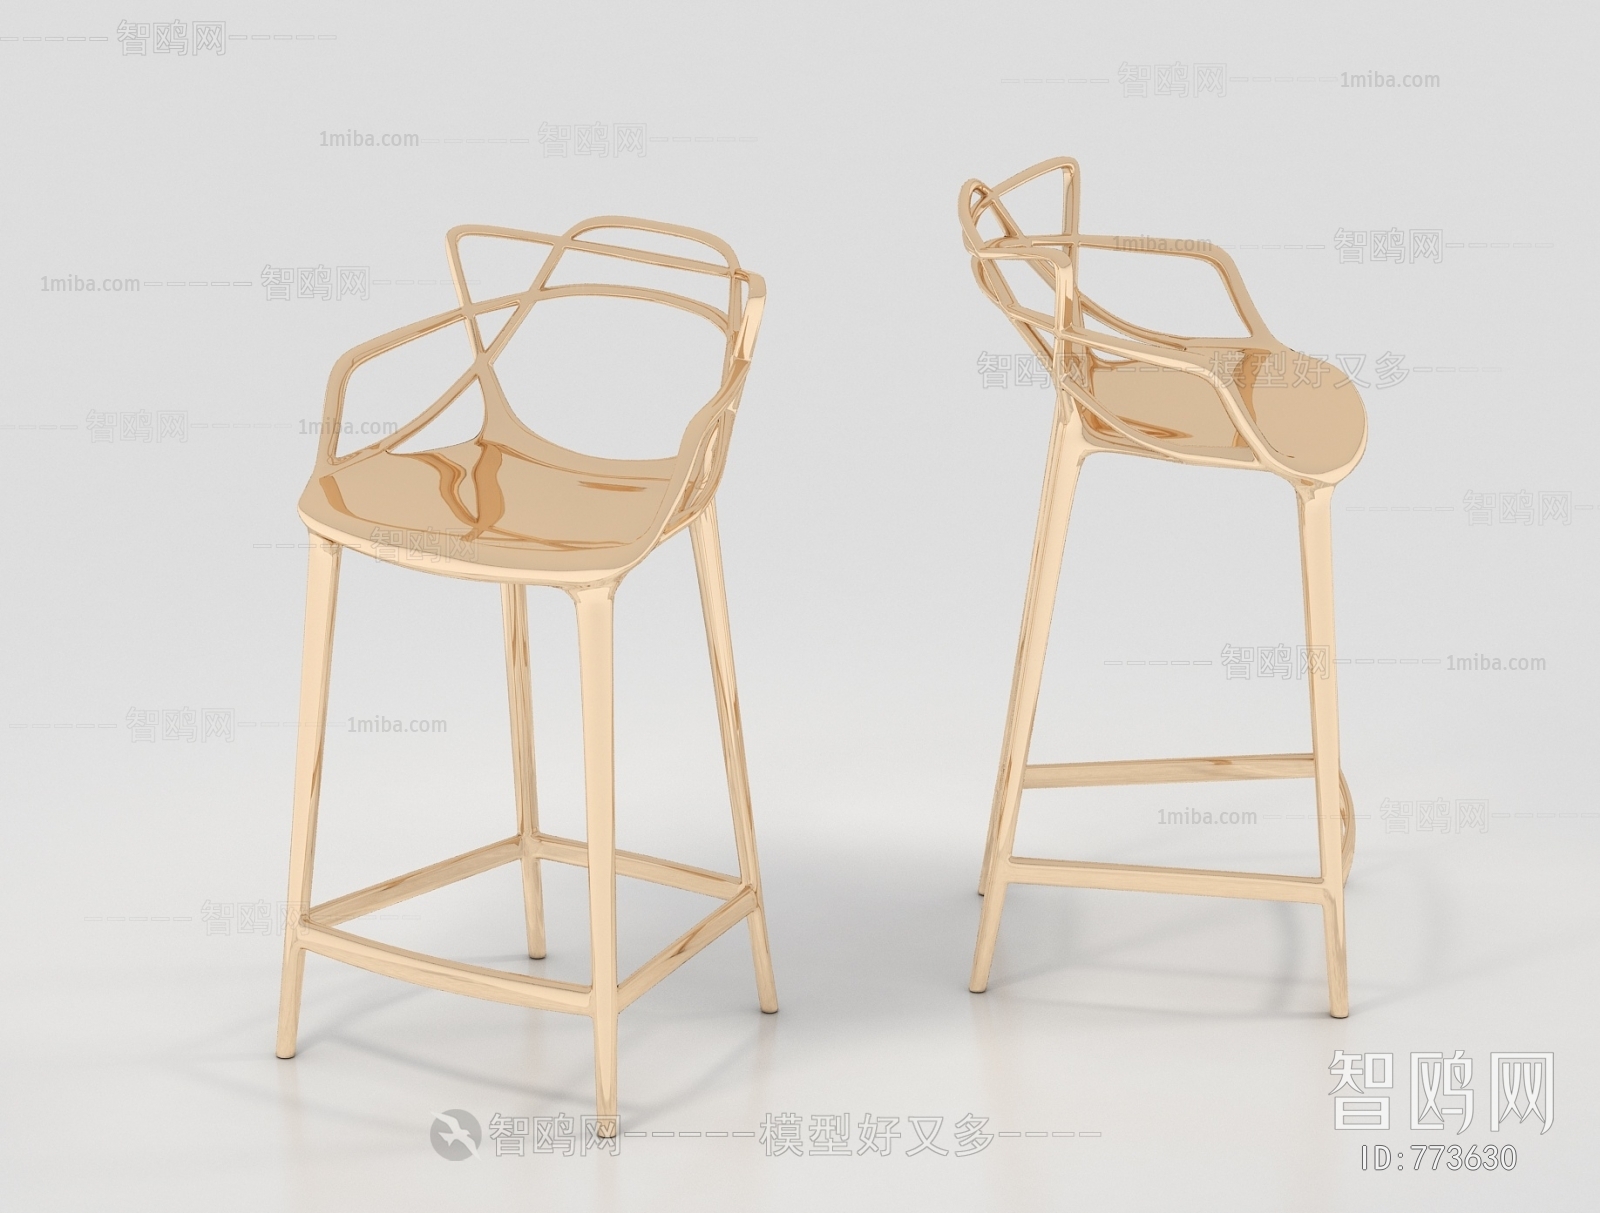 Simple European Style Bar Chair